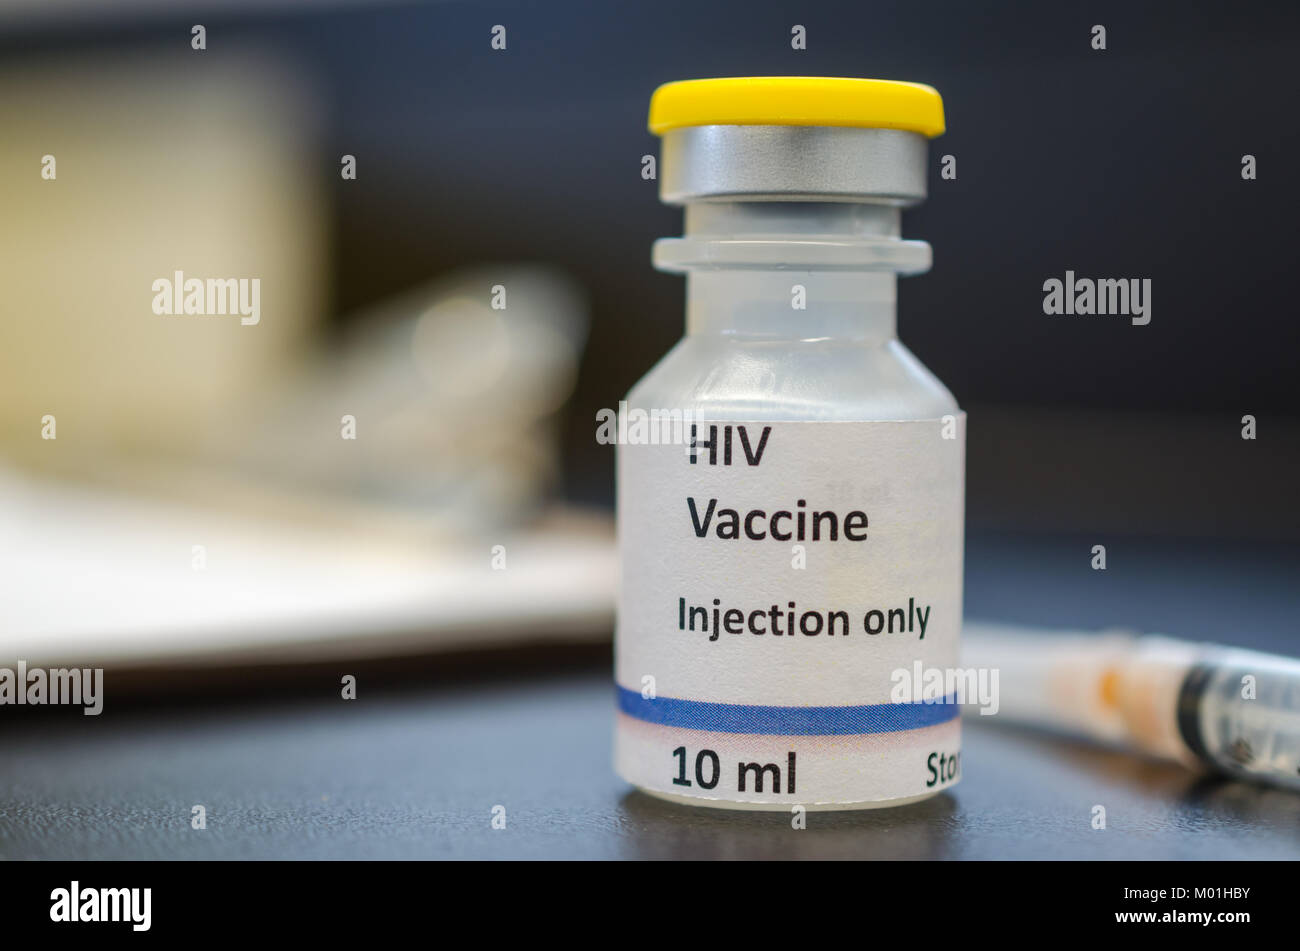 HIV flaconcino di vaccino Foto Stock